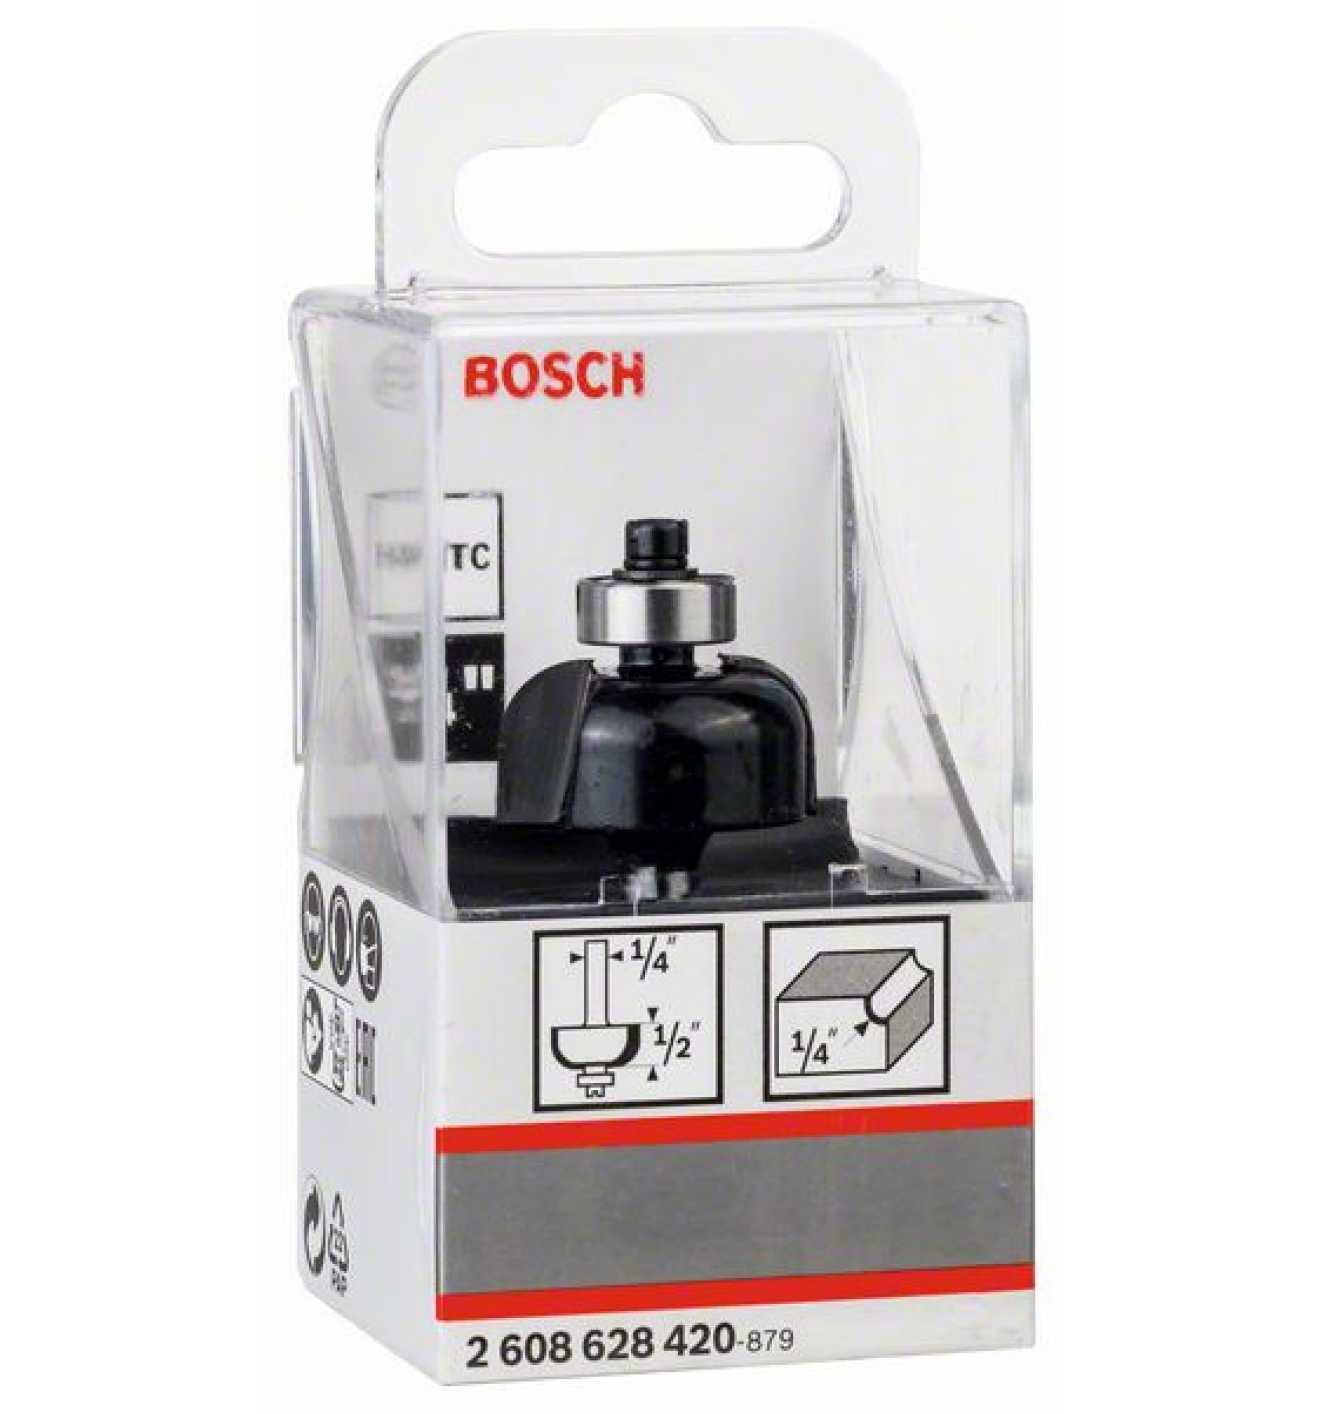 Bosch Cove bit, 1/4", R1 6.3 mm, D 25.4 mm, L 12.7 mm, G 54 mm 2608628420 Power Tool Services